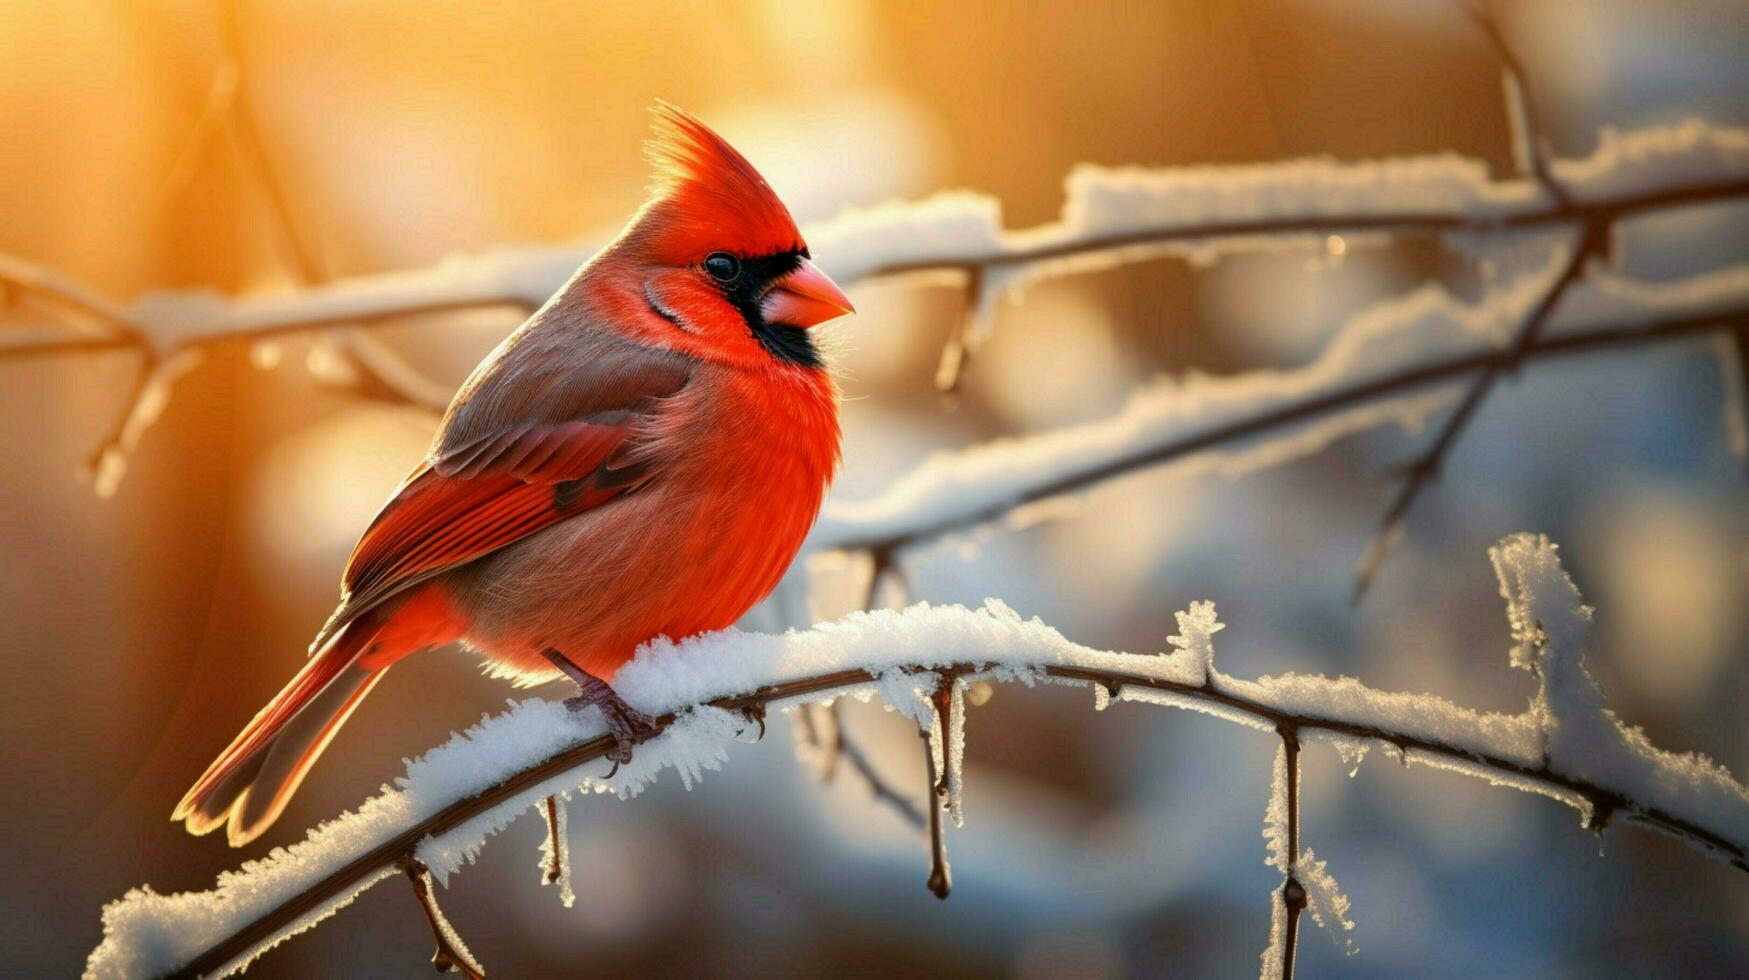 Beautiful Bird Photography Red Cardinal photo